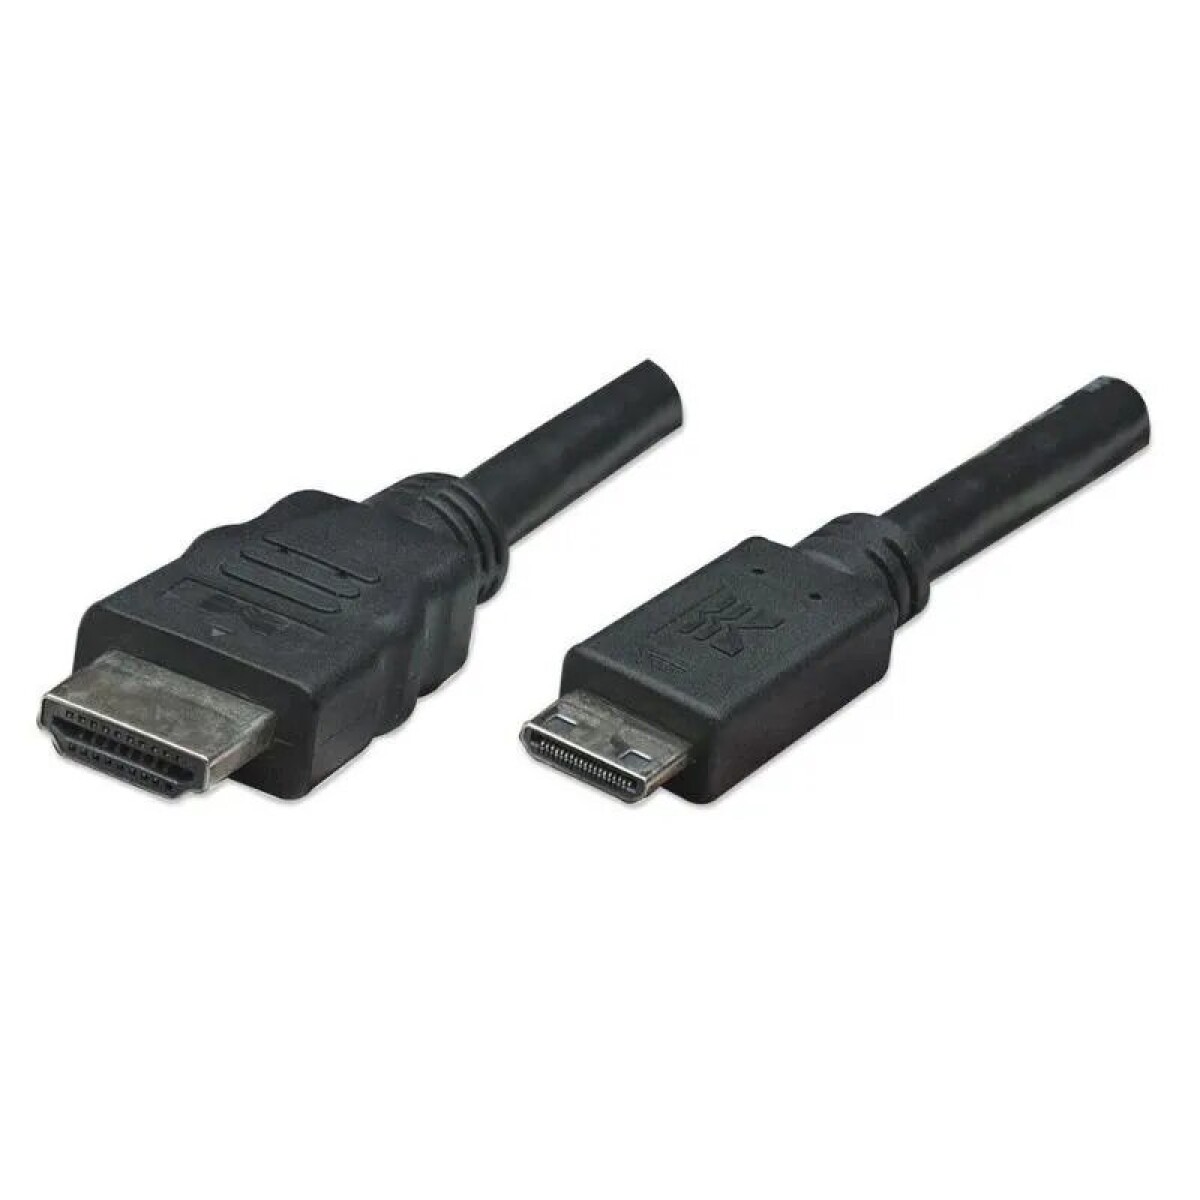 Cable HDMI a mini HDMI macho/macho 1,8 mts Manhattan - Cable Hdmi A Mini Hdmi Macho/macho 1,8 Mts Manhattan 